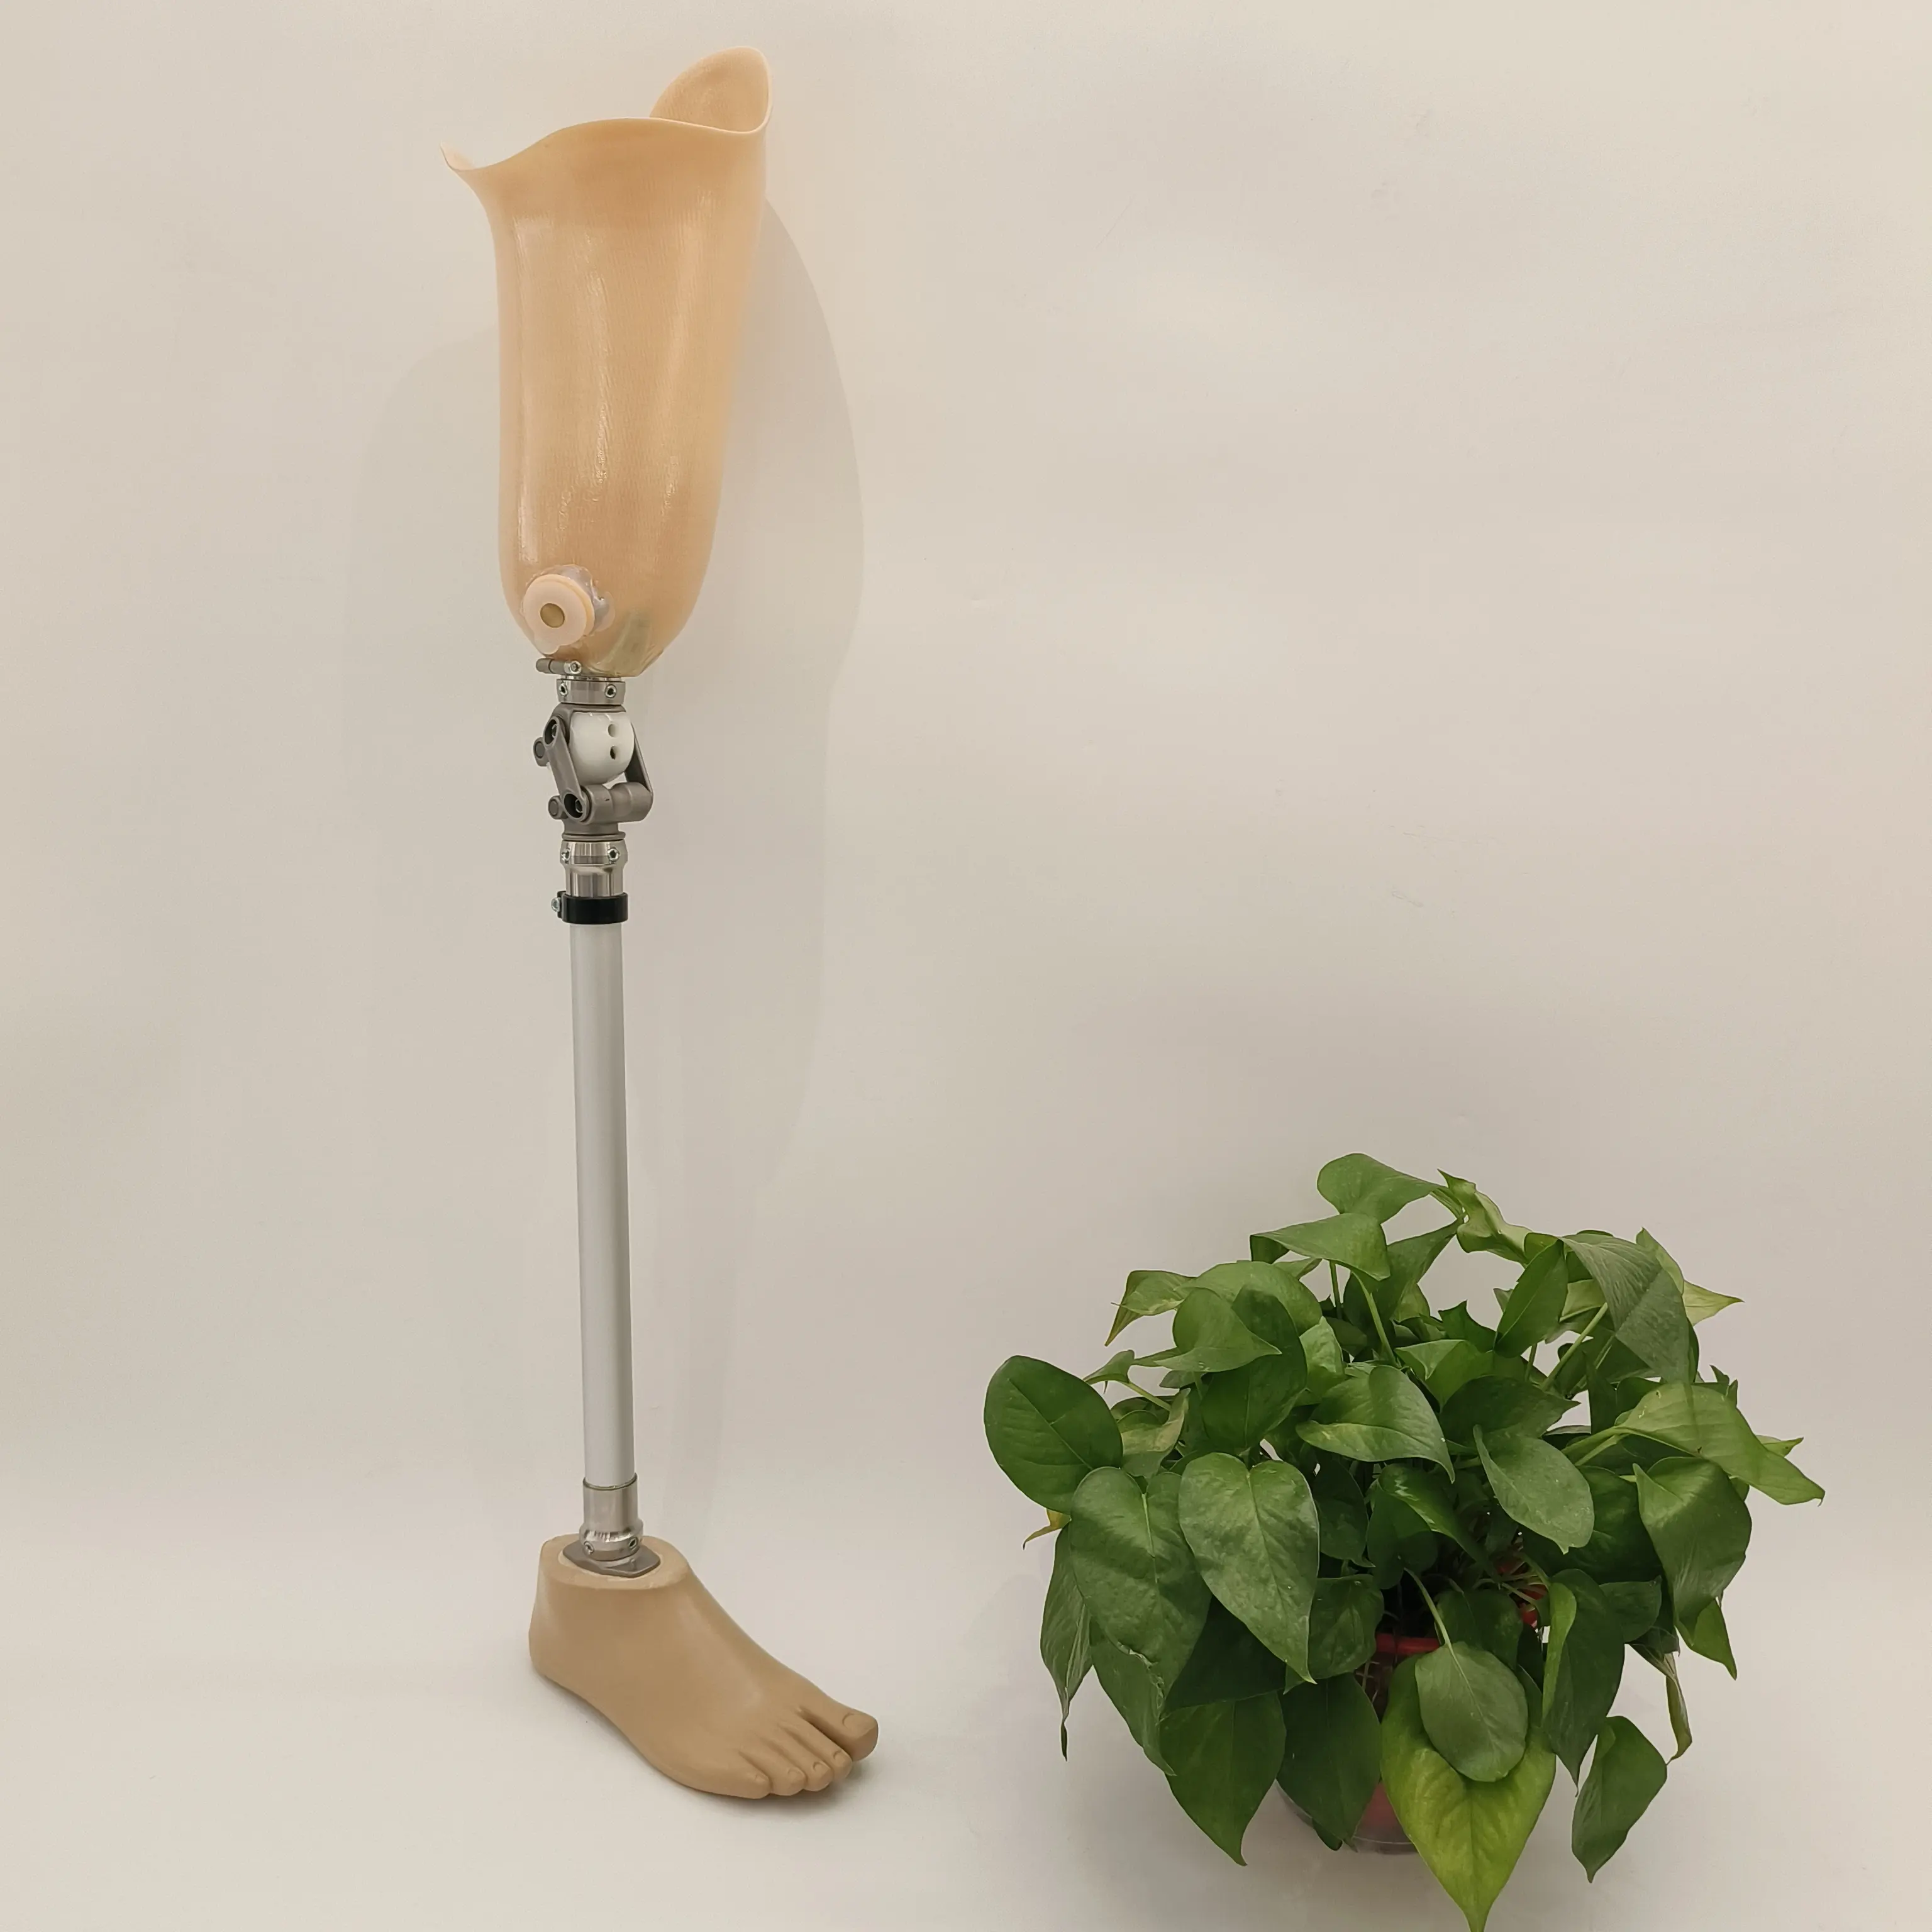 Personalizar extremidades artificiales partes prótesis ortesis por encima de la rodilla Acero inoxidable AK prótesis pierna comercio